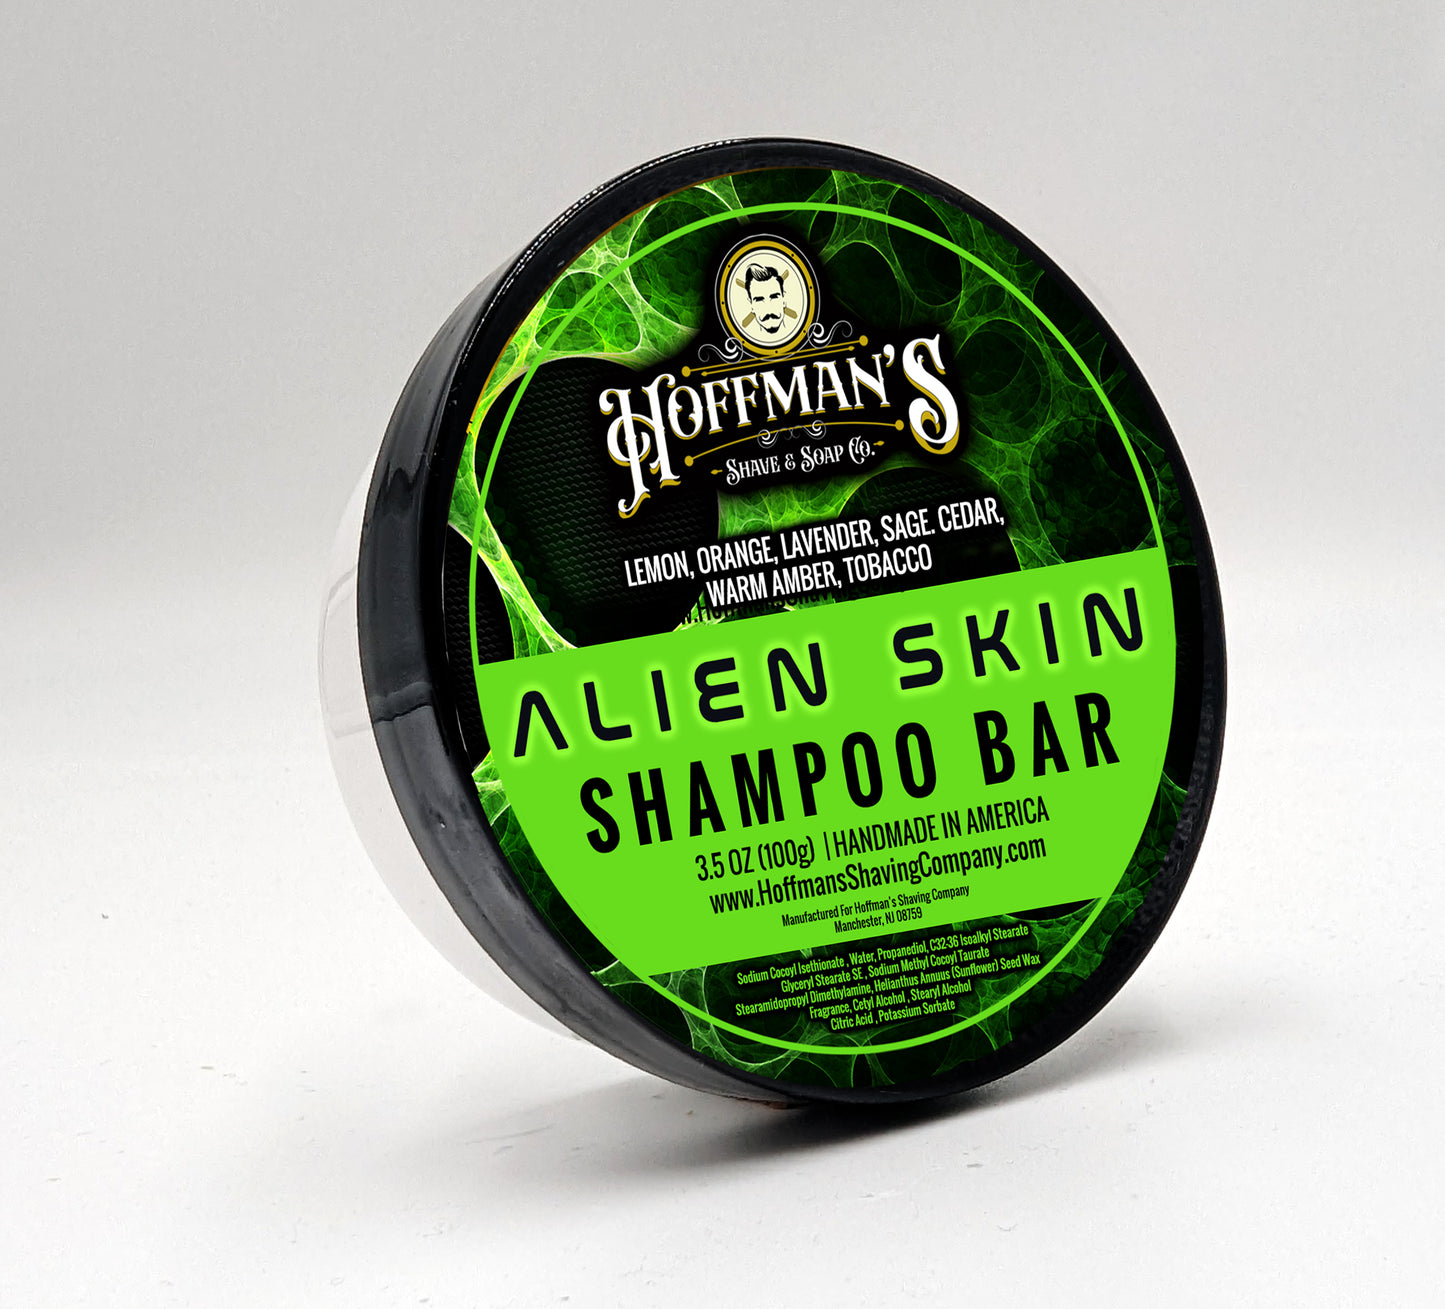 Alien Skin Shampoo Bar 3.5 oz